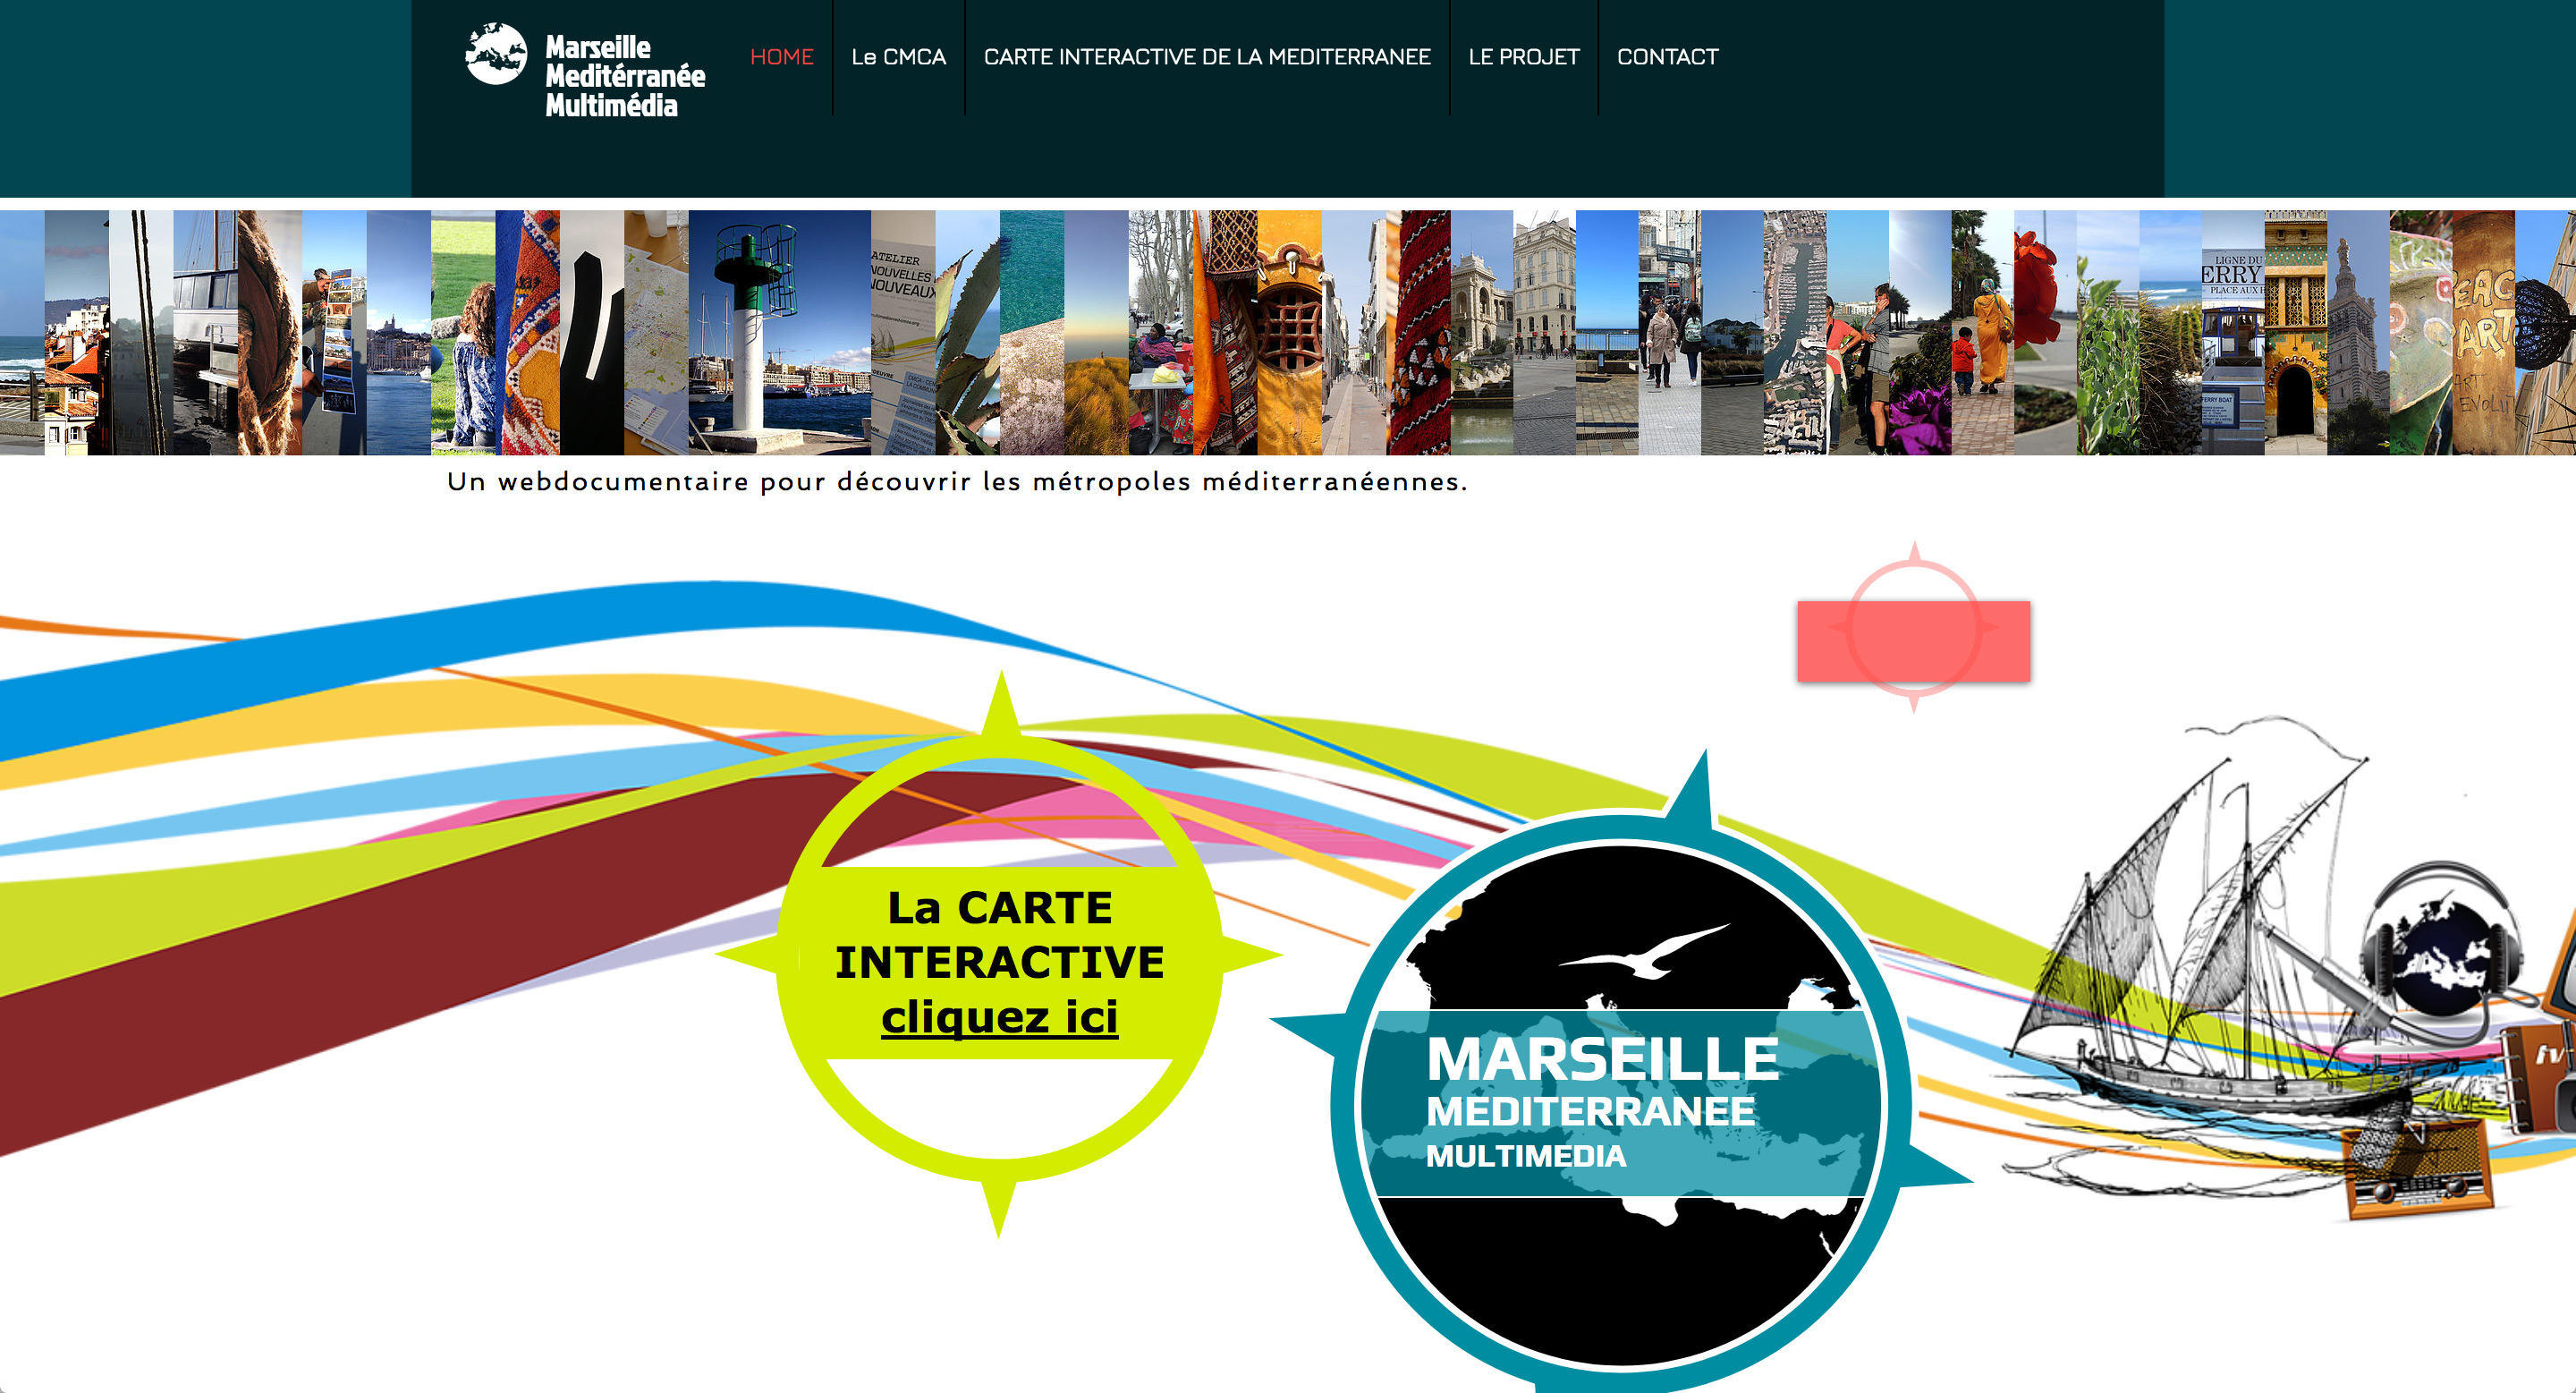 Web-documentaire-marseille-mditerranee